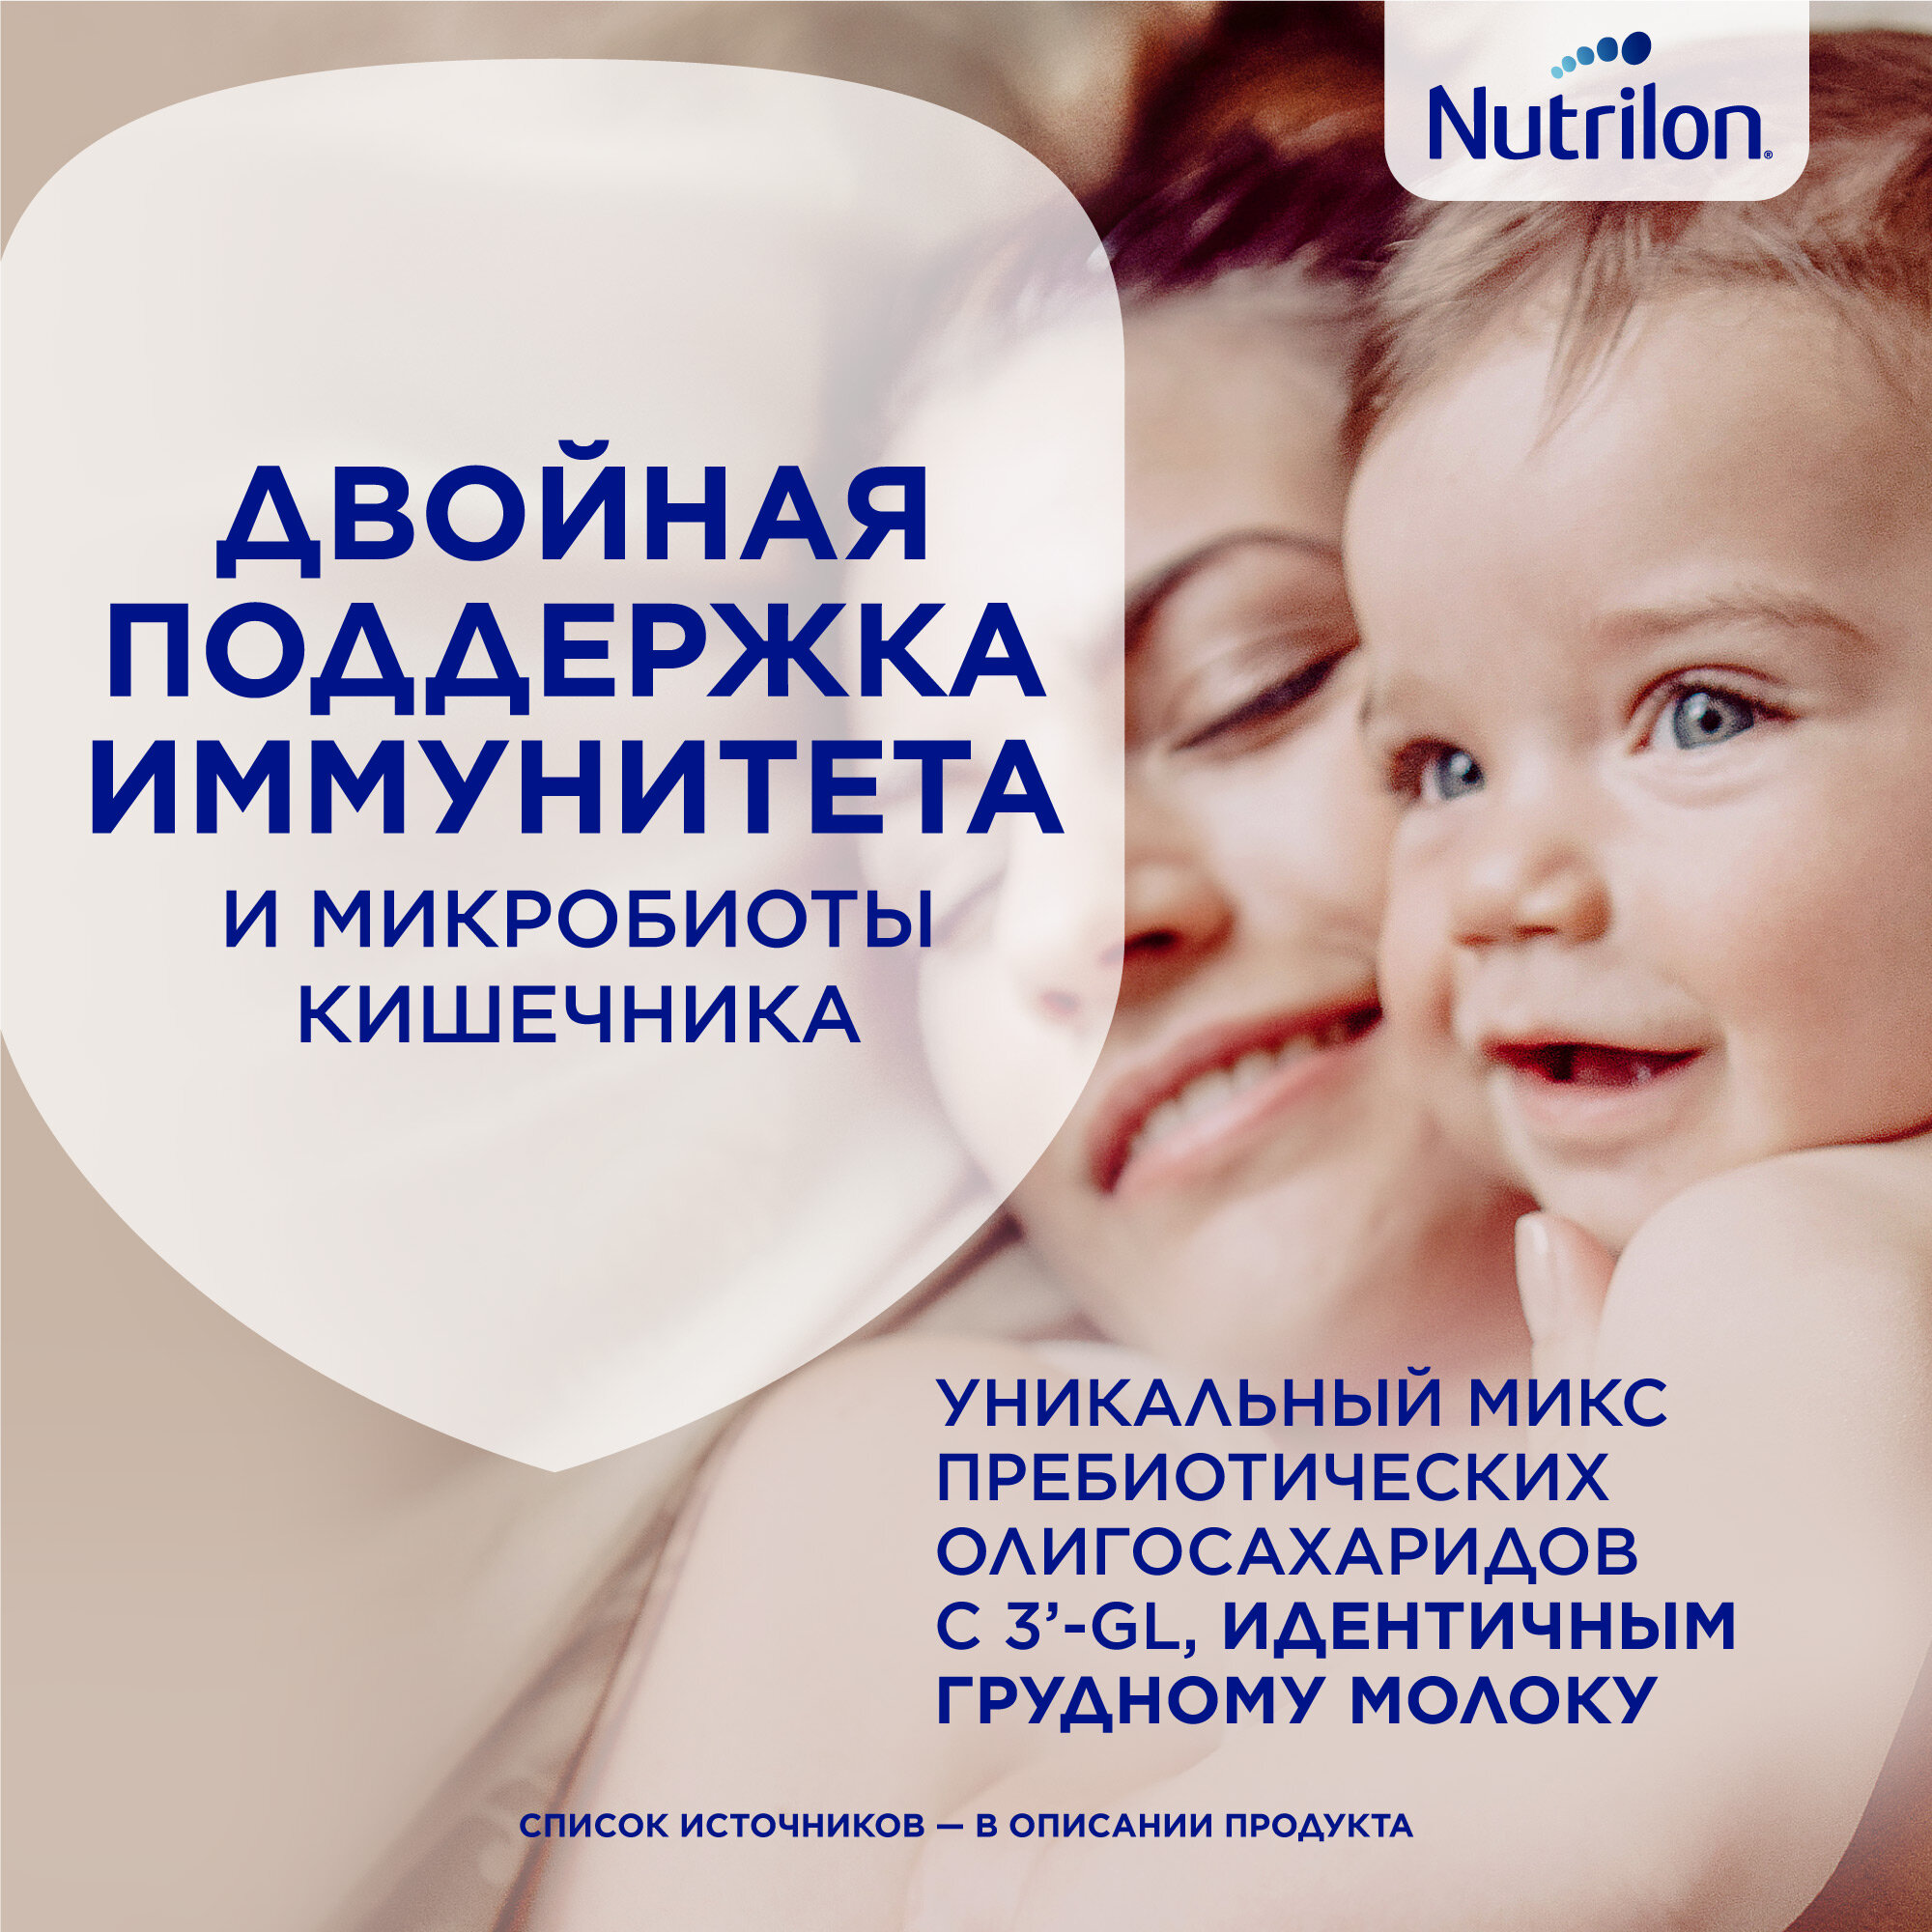 Смесь Nutrilon 2 Premium молочная, 1200 г - фото №3